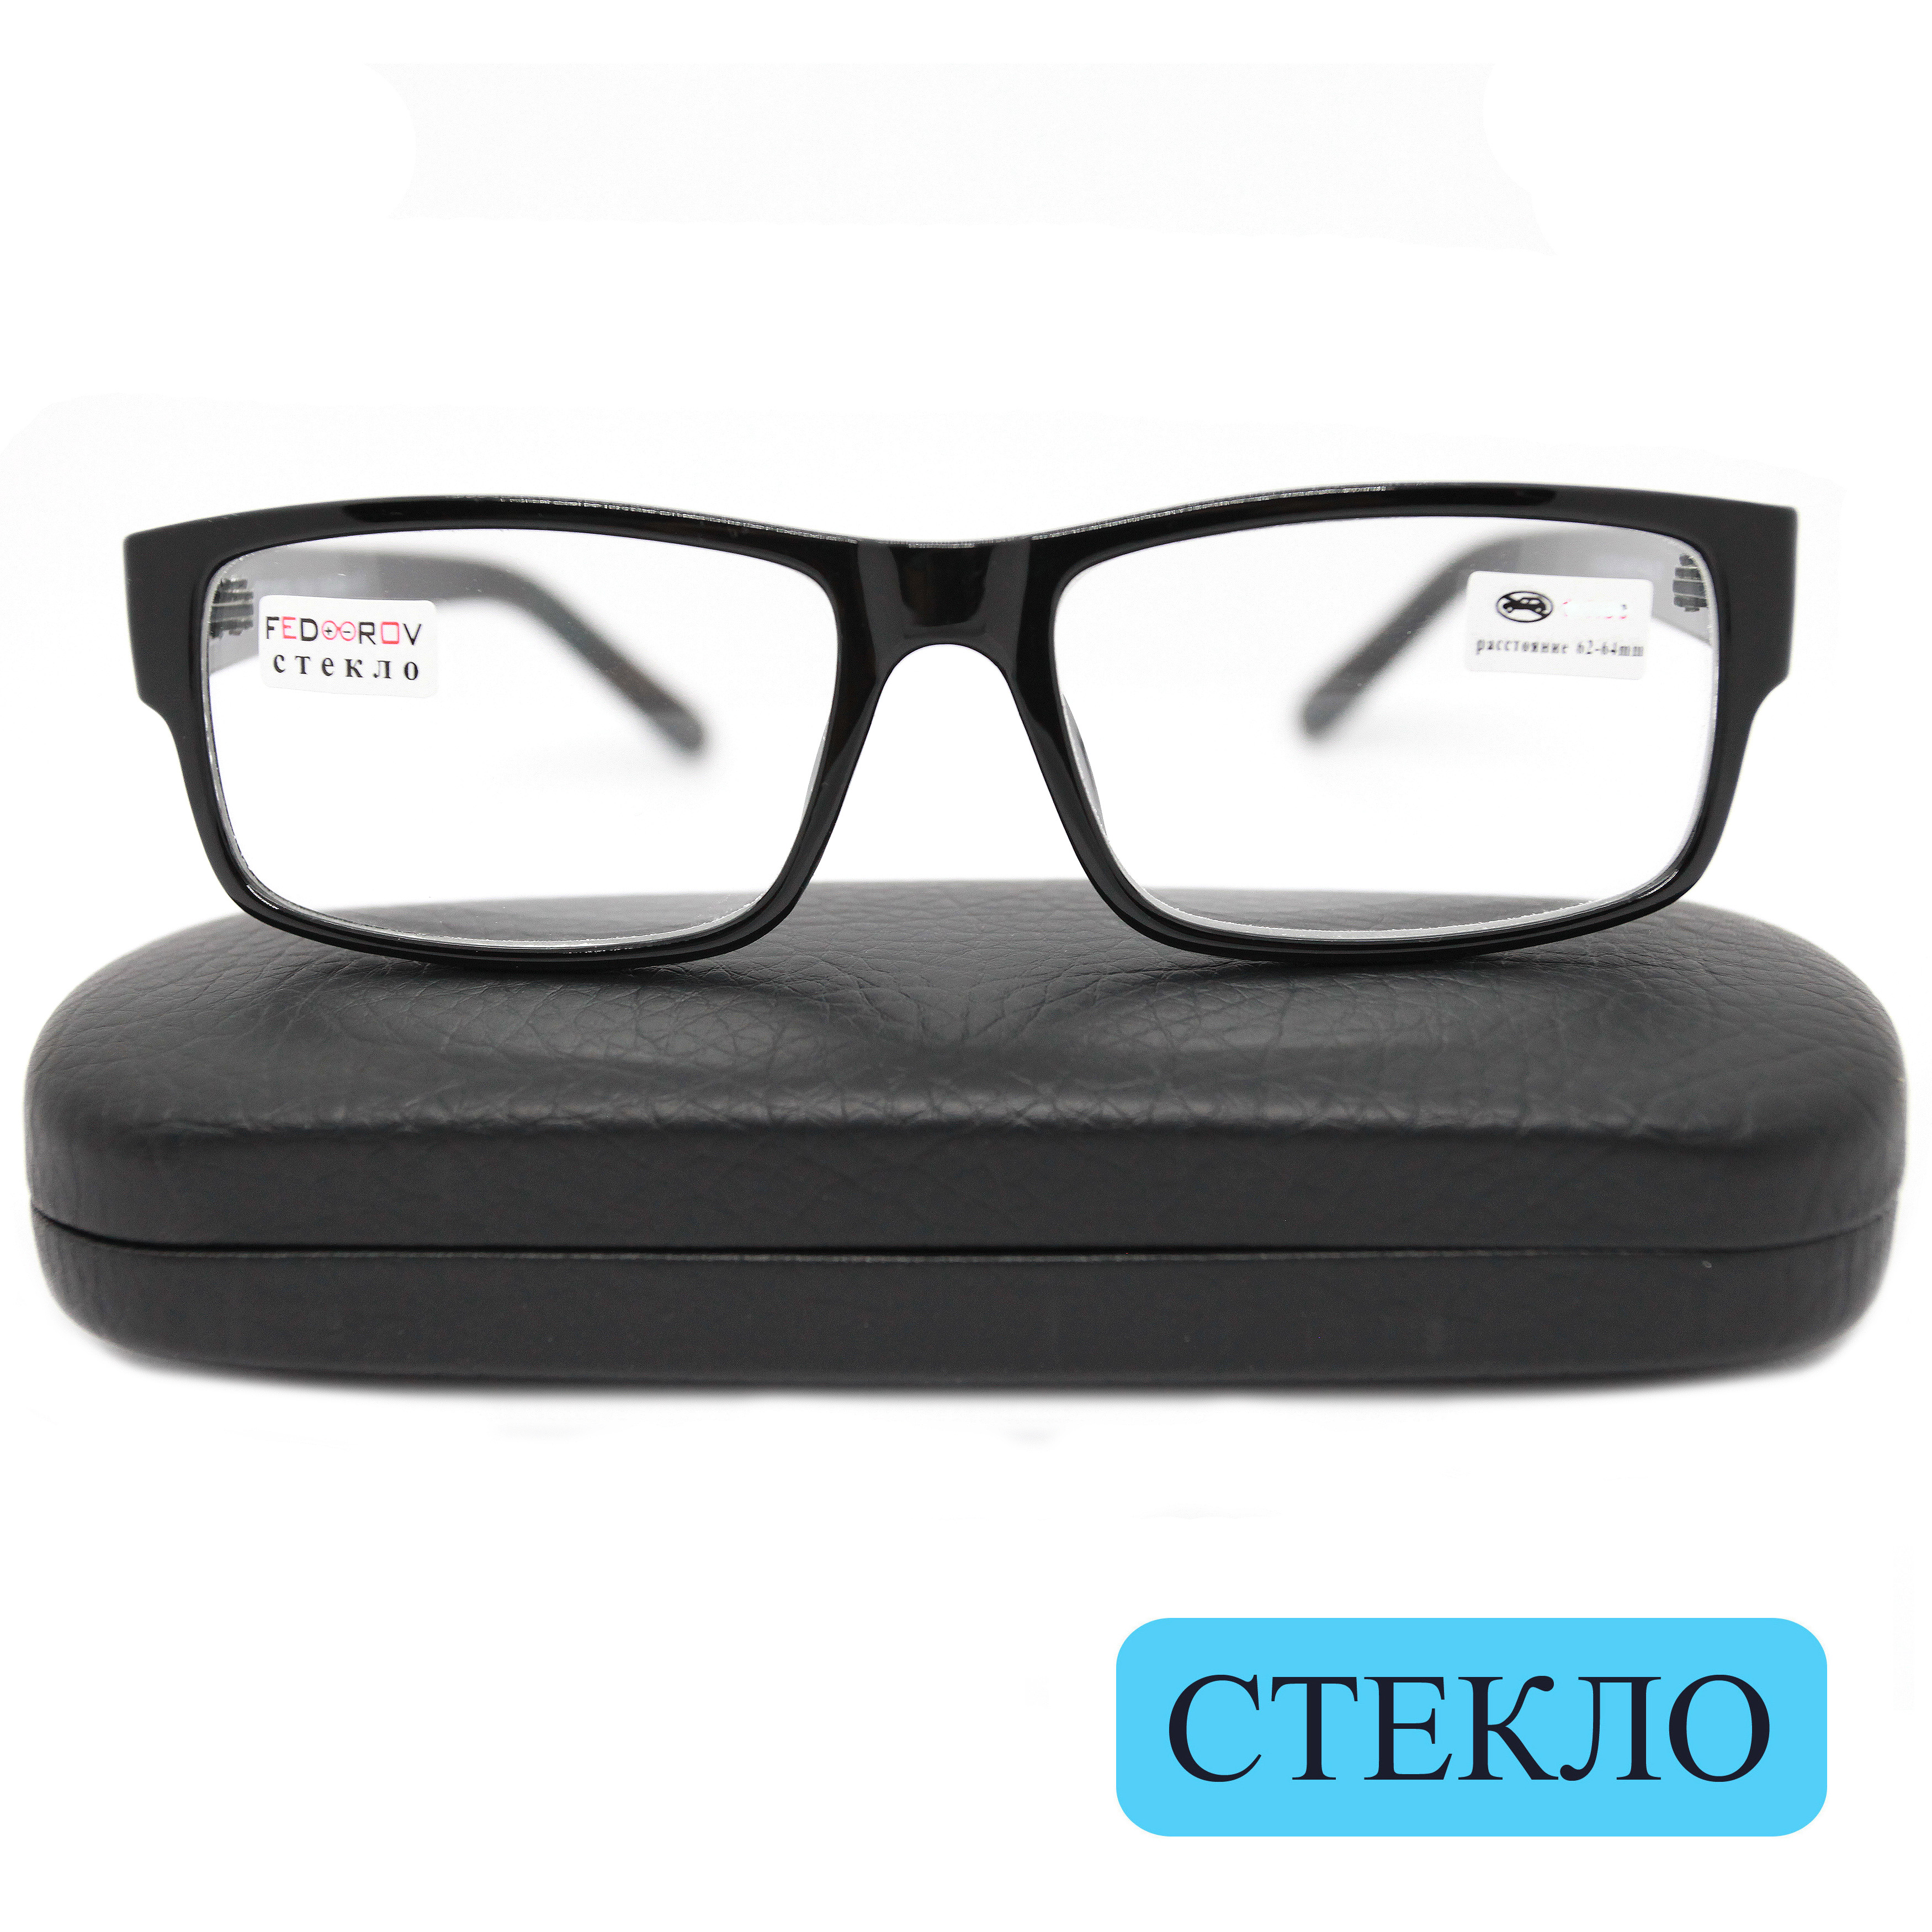 Готовые очки Fedrov 2722, со стеклянной линзой, +3,75, c футляром, черный, РЦ 62-64